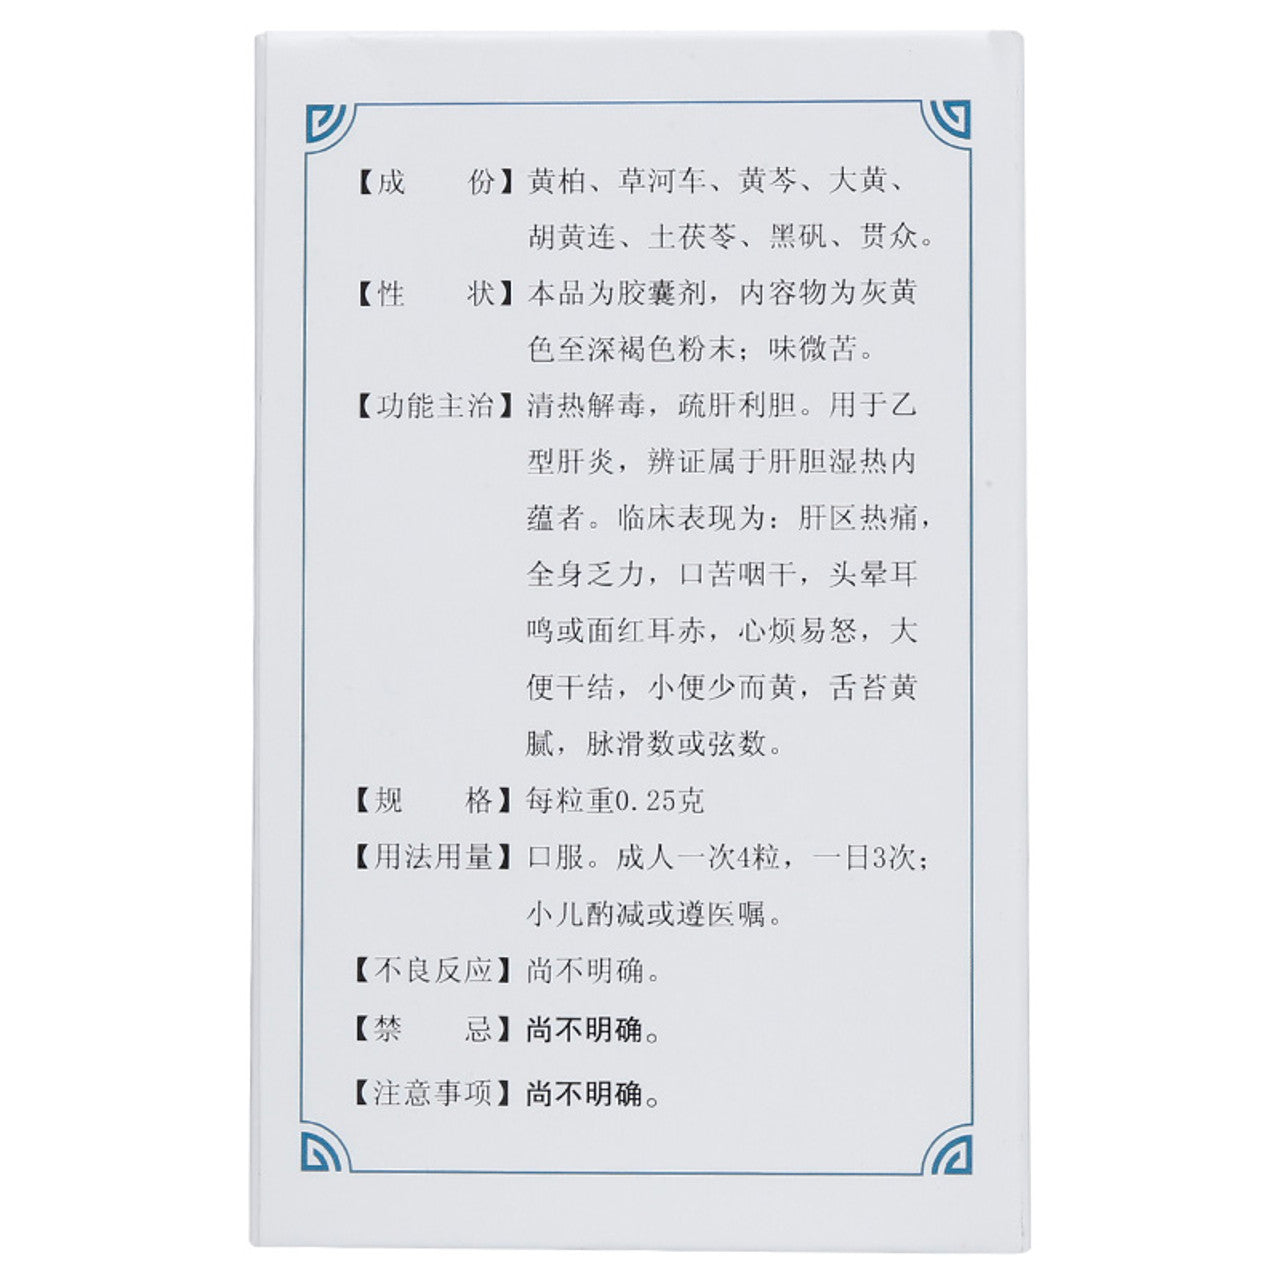 China Herb. Yigan Jiedu Jiaonang / Yigan Jiedu Capsules / Yi Gan Jie Du Jiao Nang / Yi Gan Jie Du Capsules